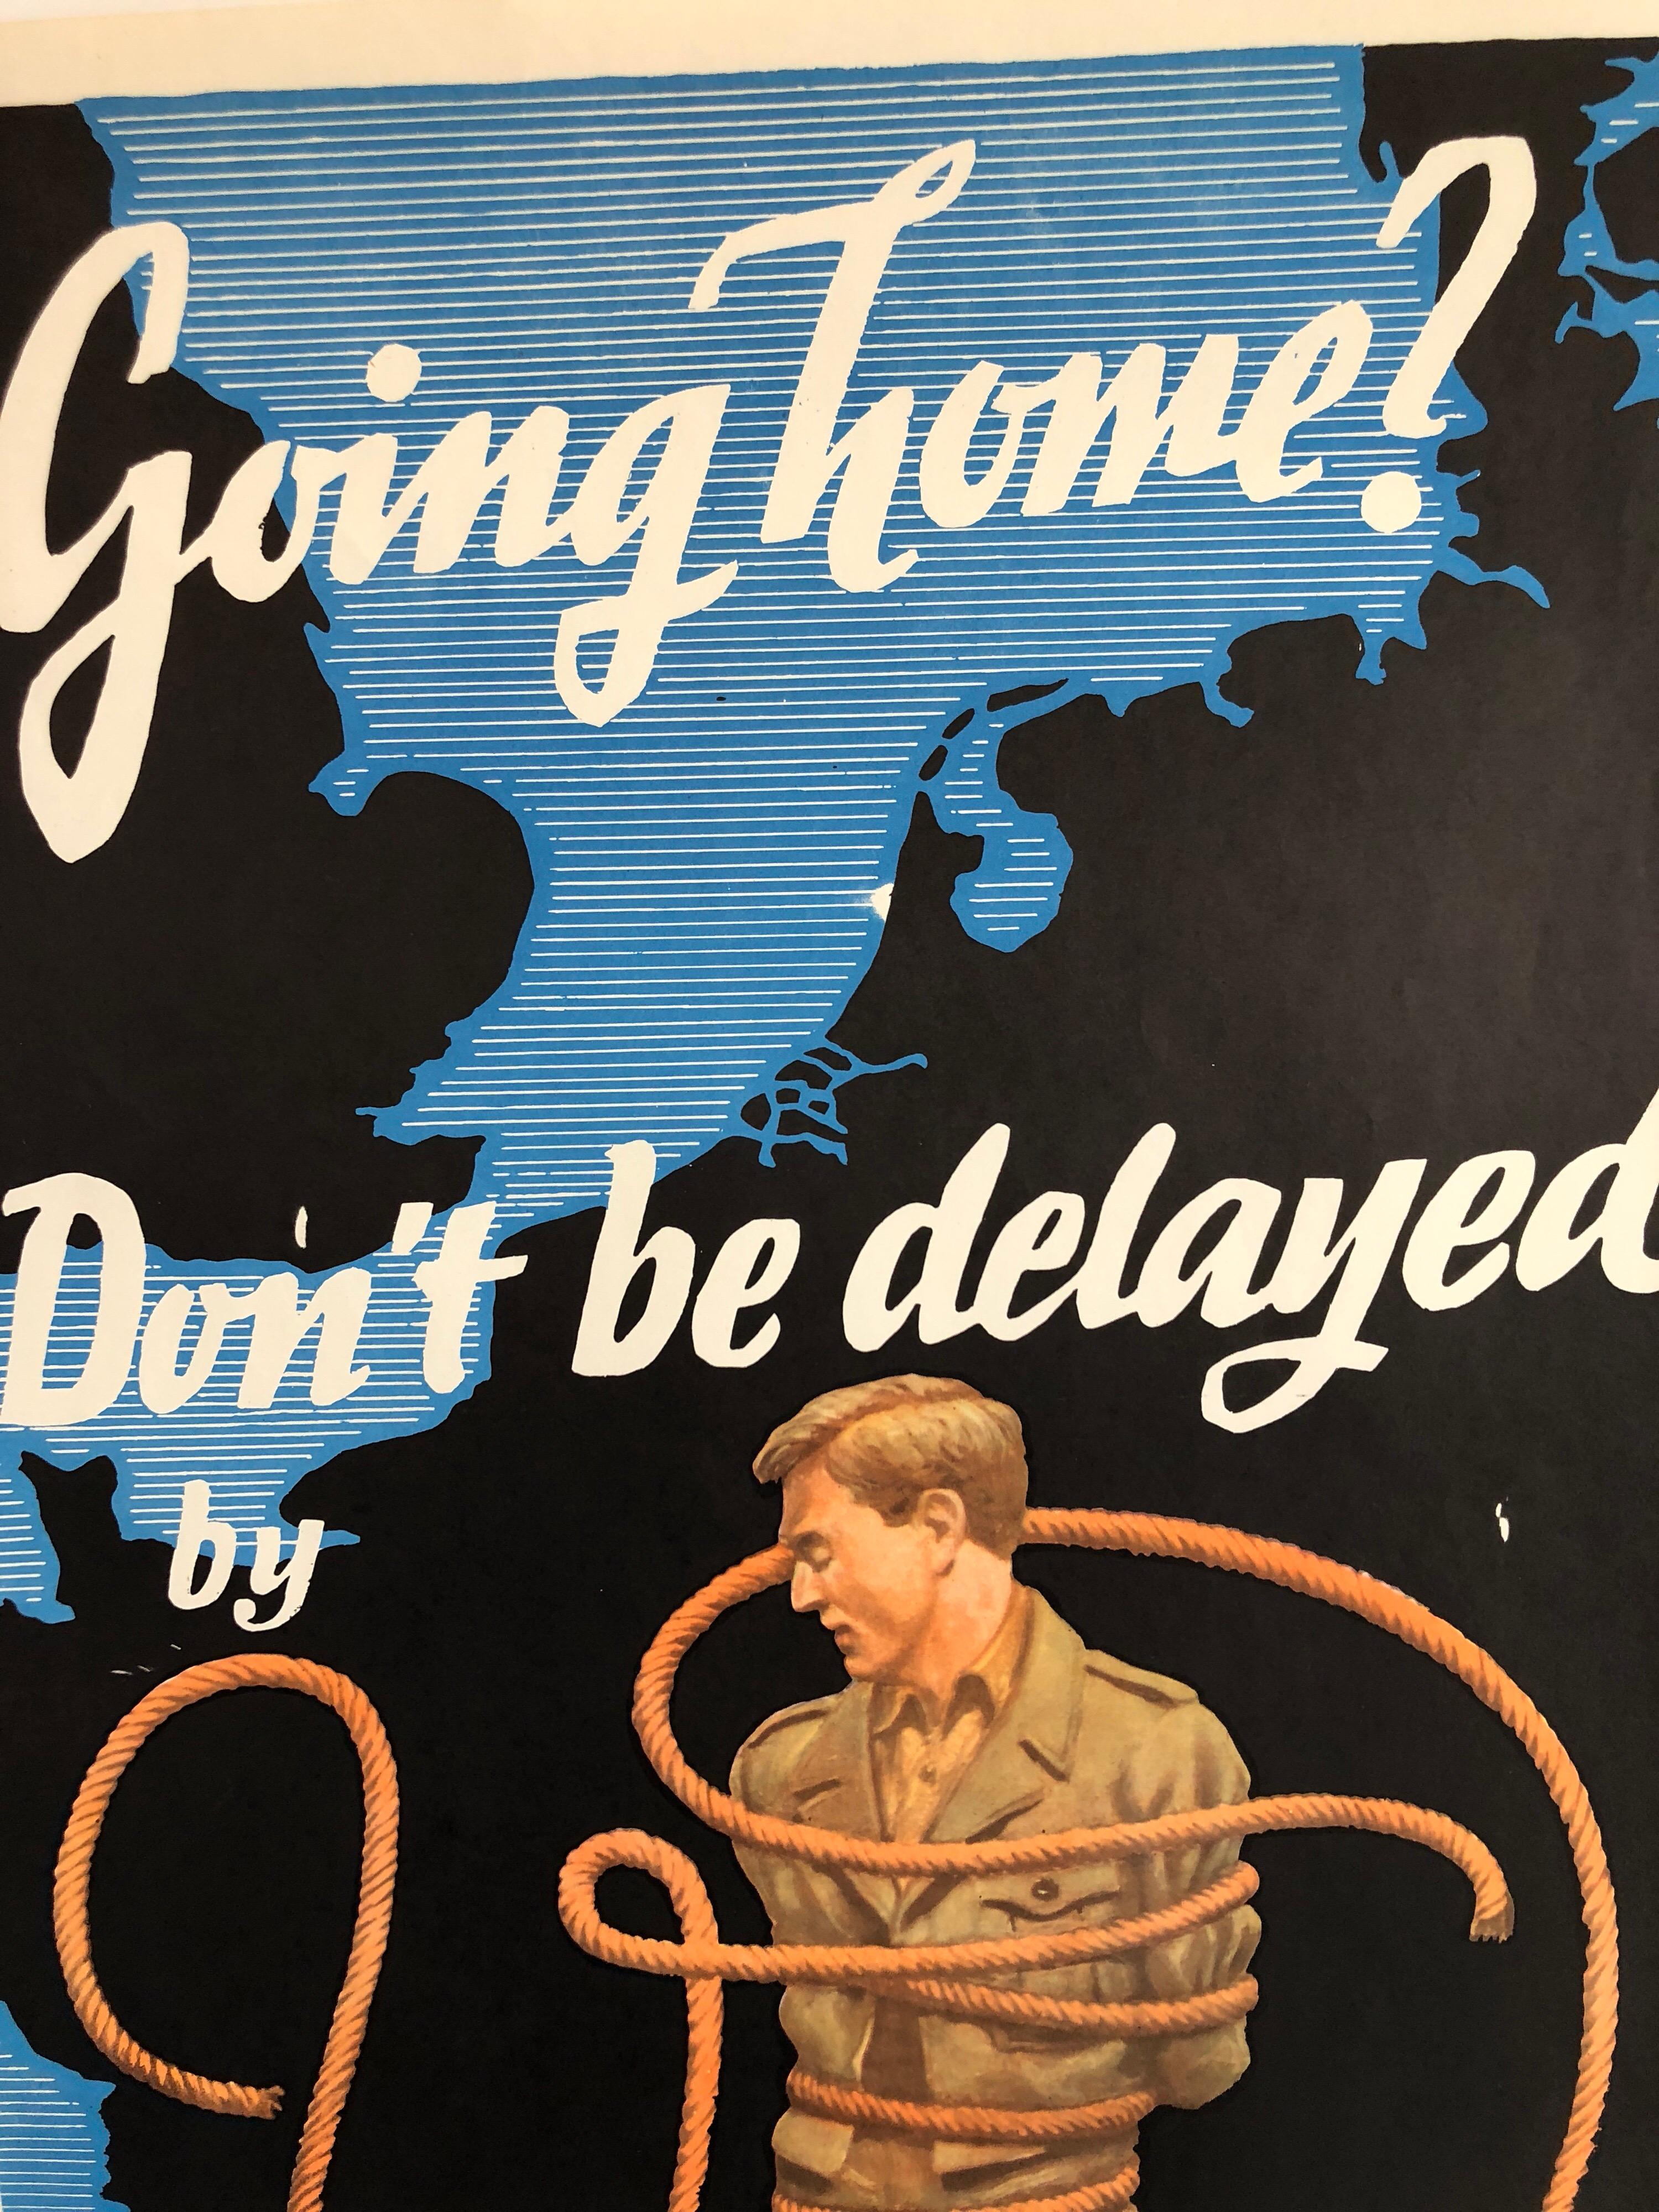  Gehst du nach Hause? Lass dich von V.D. nicht aufhalten; 1946 Militärplakat von Franz Oswald Schiffers. 
Gehst du nach Hause? Lassen Sie sich durch V.I.I. nicht aufhalten. VD, das US-amerikanische (oder australische) Gesundheitsplakat aus dem